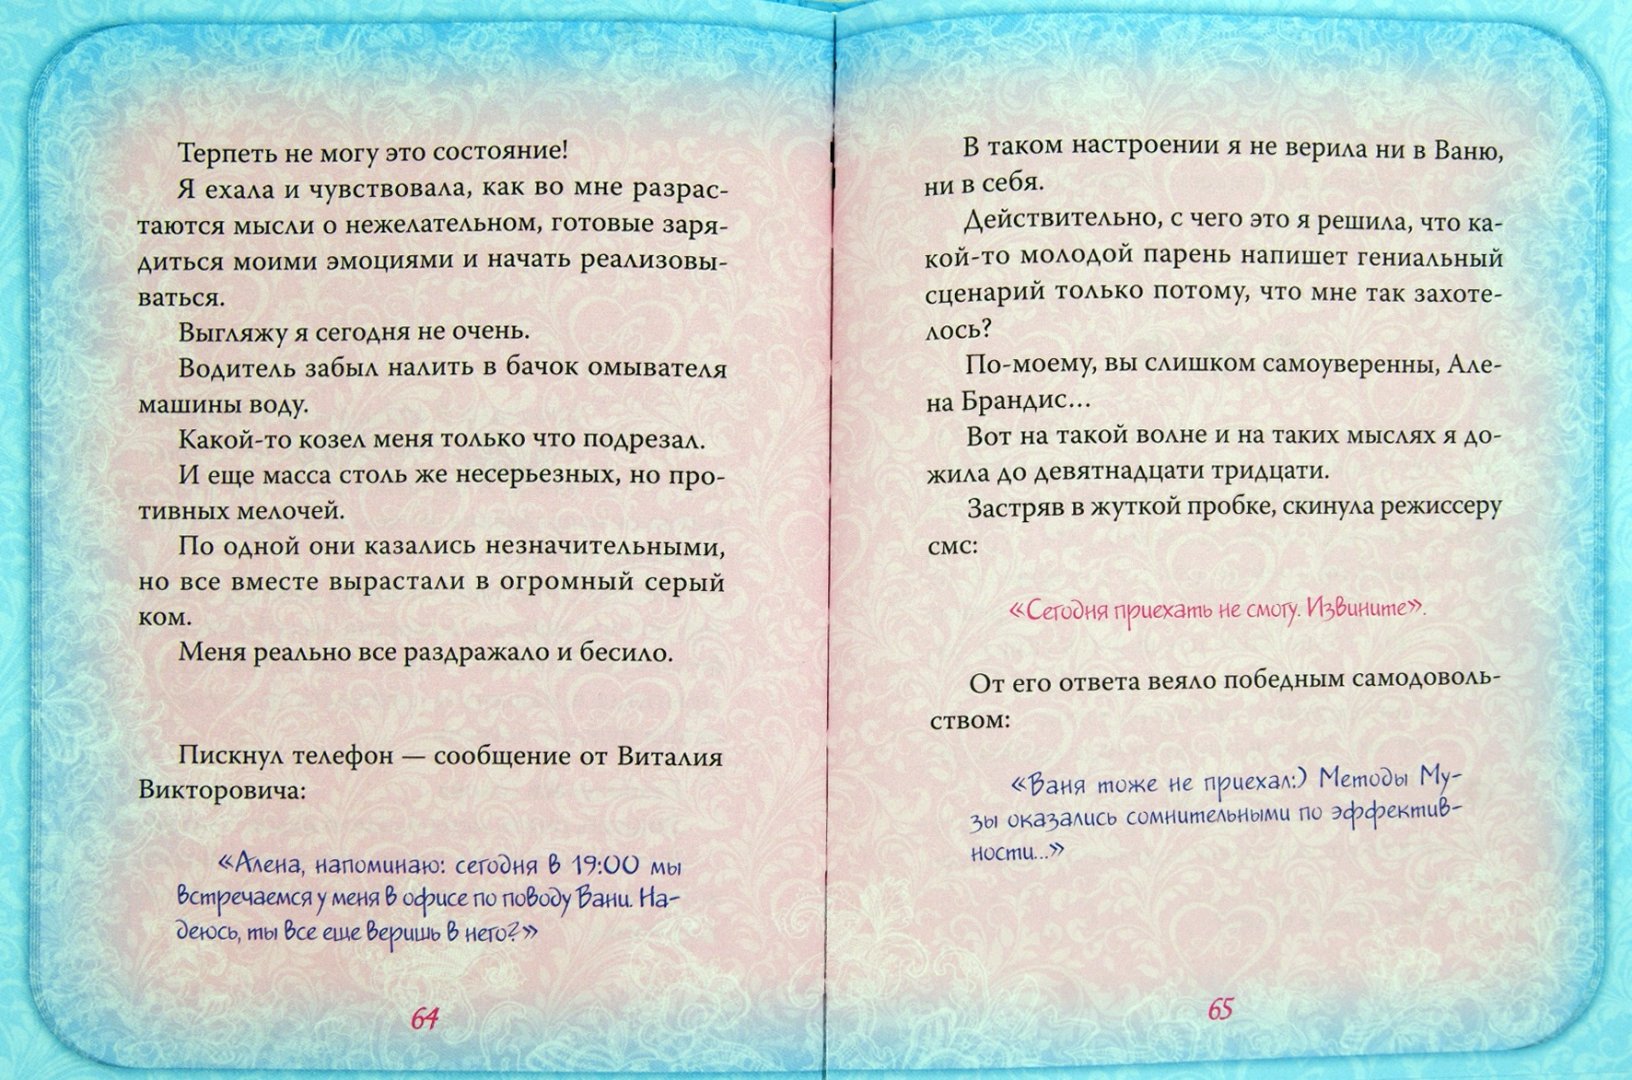 Иллюстрация 1 из 5 для Тайный дневник Музы (+CD) - Алена Брандис | Лабиринт - книги. Источник: Лабиринт